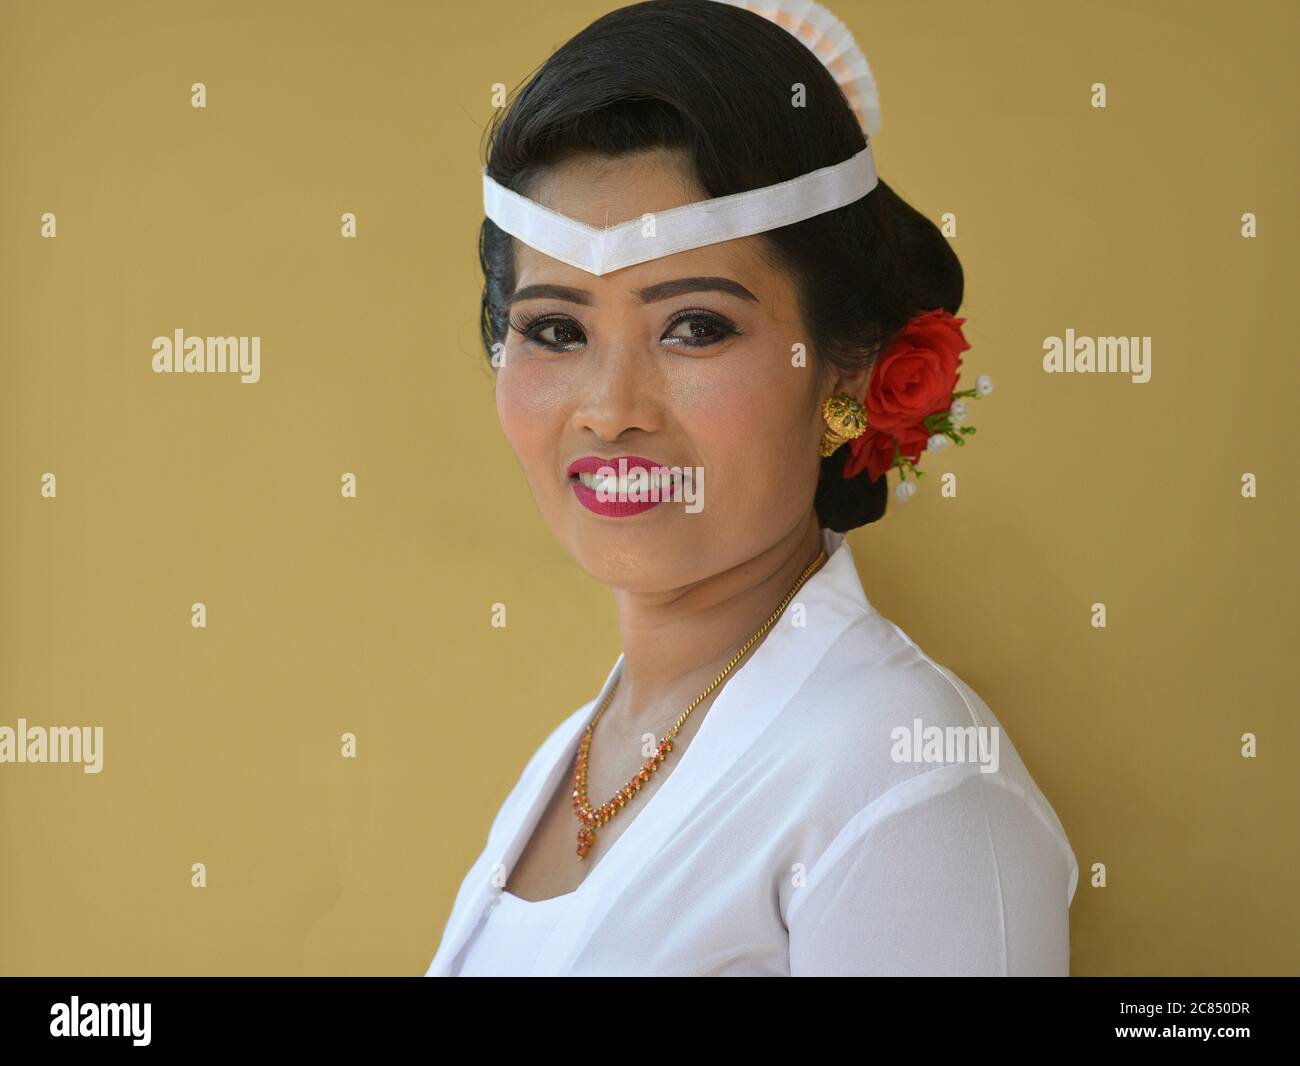 La femme indonésienne balinaise porte une tenue blanche et sourit pour la caméra lors d'une cérémonie religieuse du temple hindou (festival Odalan). Banque D'Images